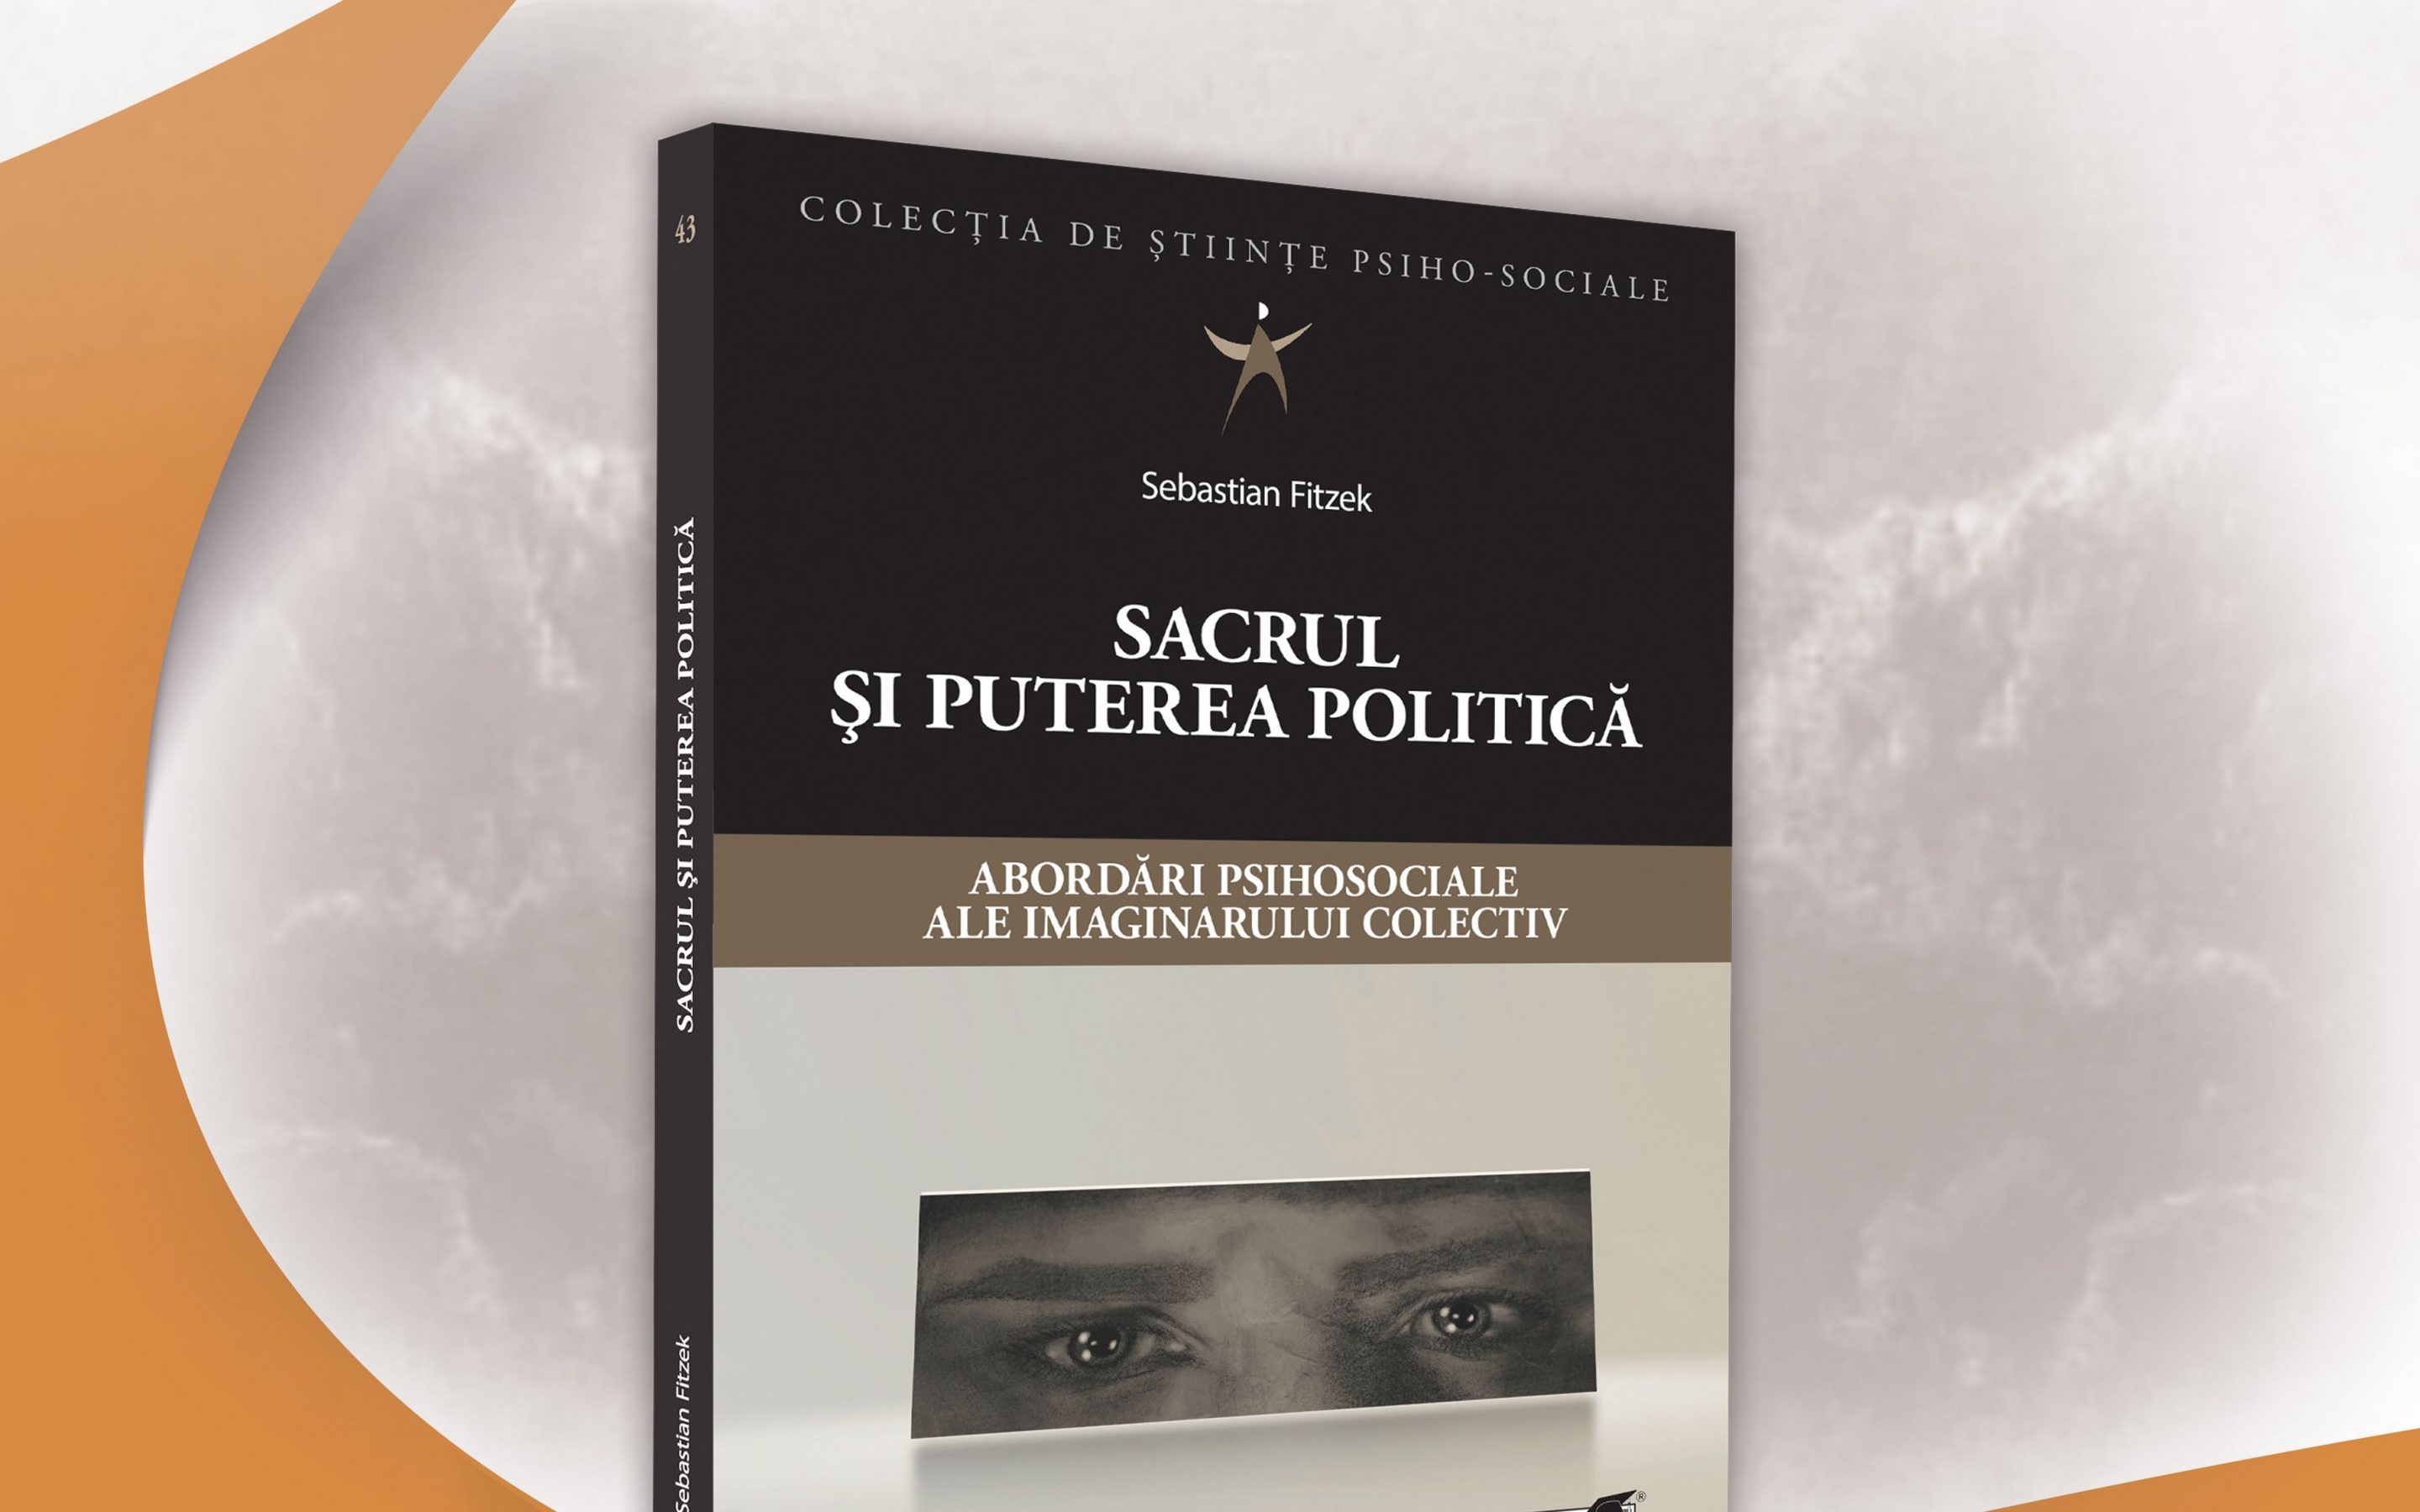 Lansare de carte: Sebastian Fitzek (2020) Sacrul și puterea politică – abordări psihociale ale imaginarului colectiv în colecția de științe psiho-sociale. București:  Editura ProUniversitaria